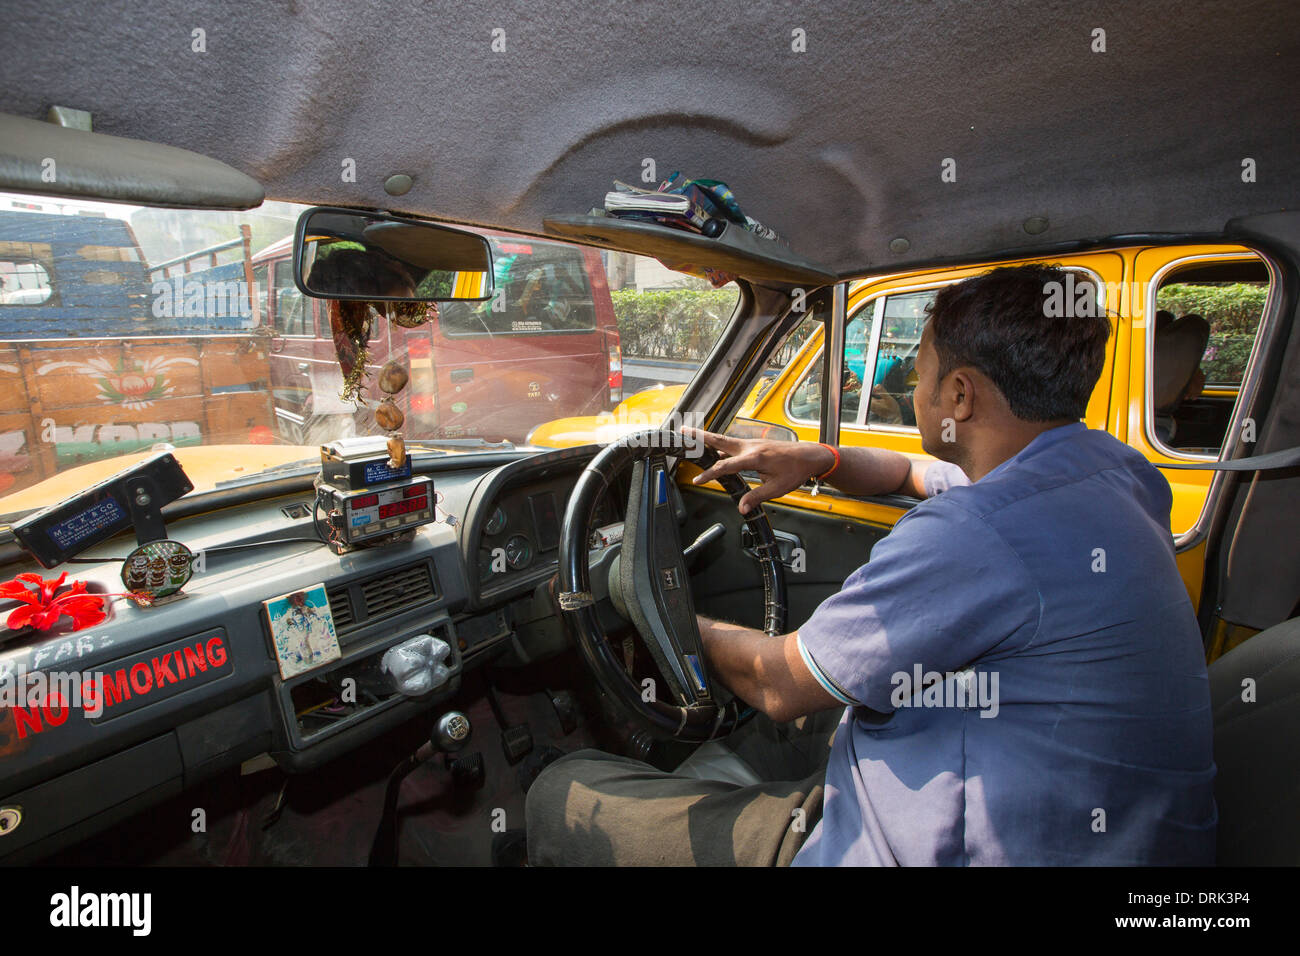 A taxi stuck in a traffic jam in Calcutta, India. Stock Photo